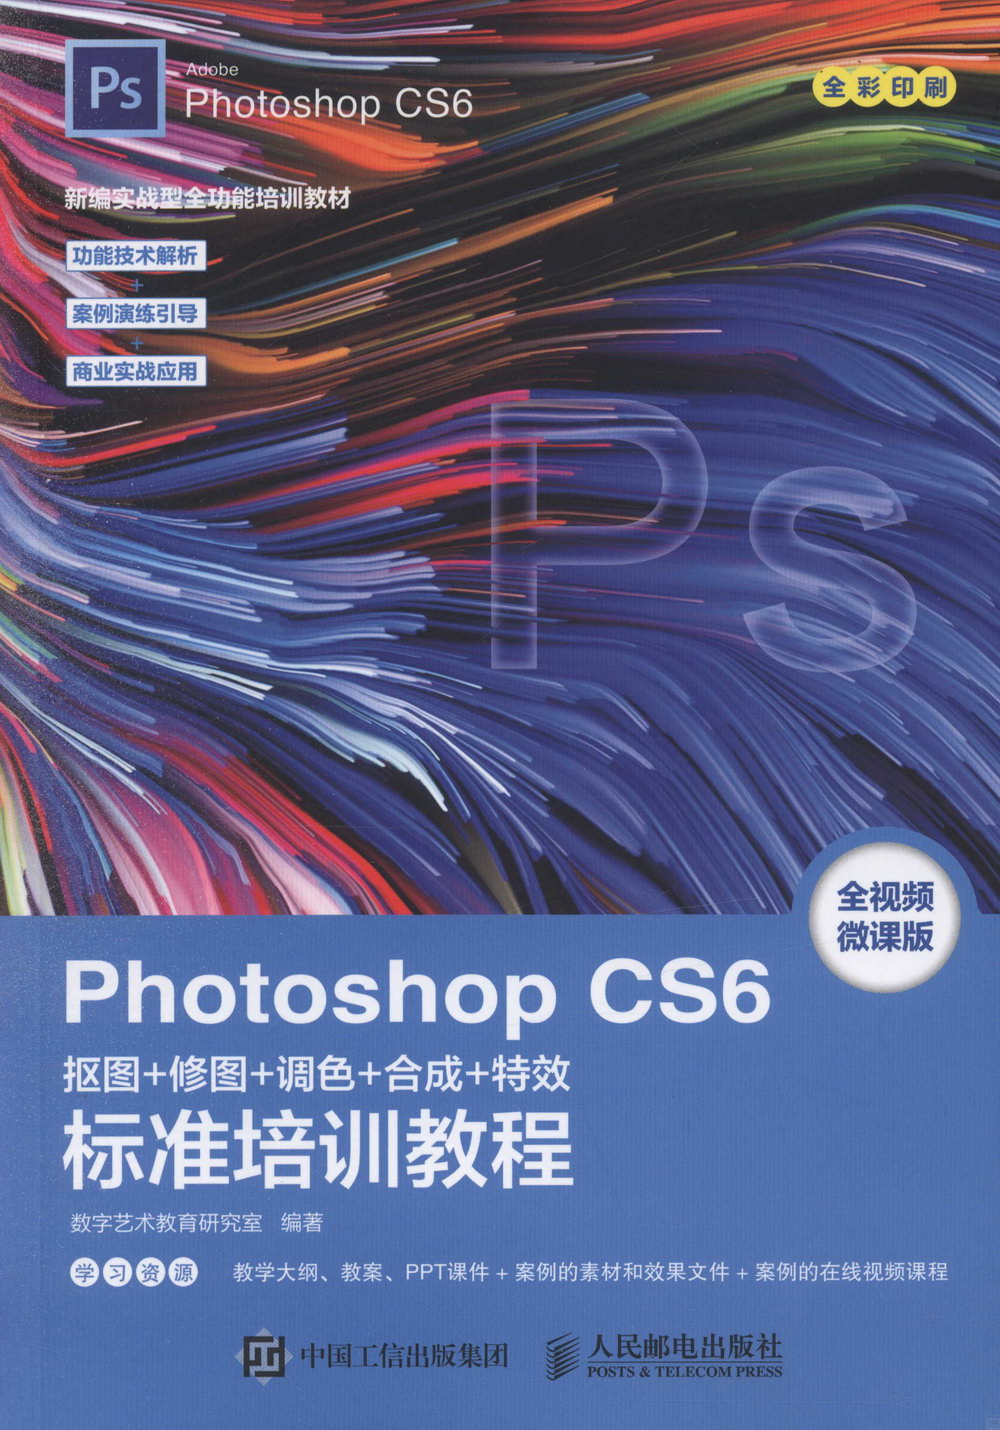 Photoshop CS6摳圖+修圖+調色+合成+特效標準培訓教程